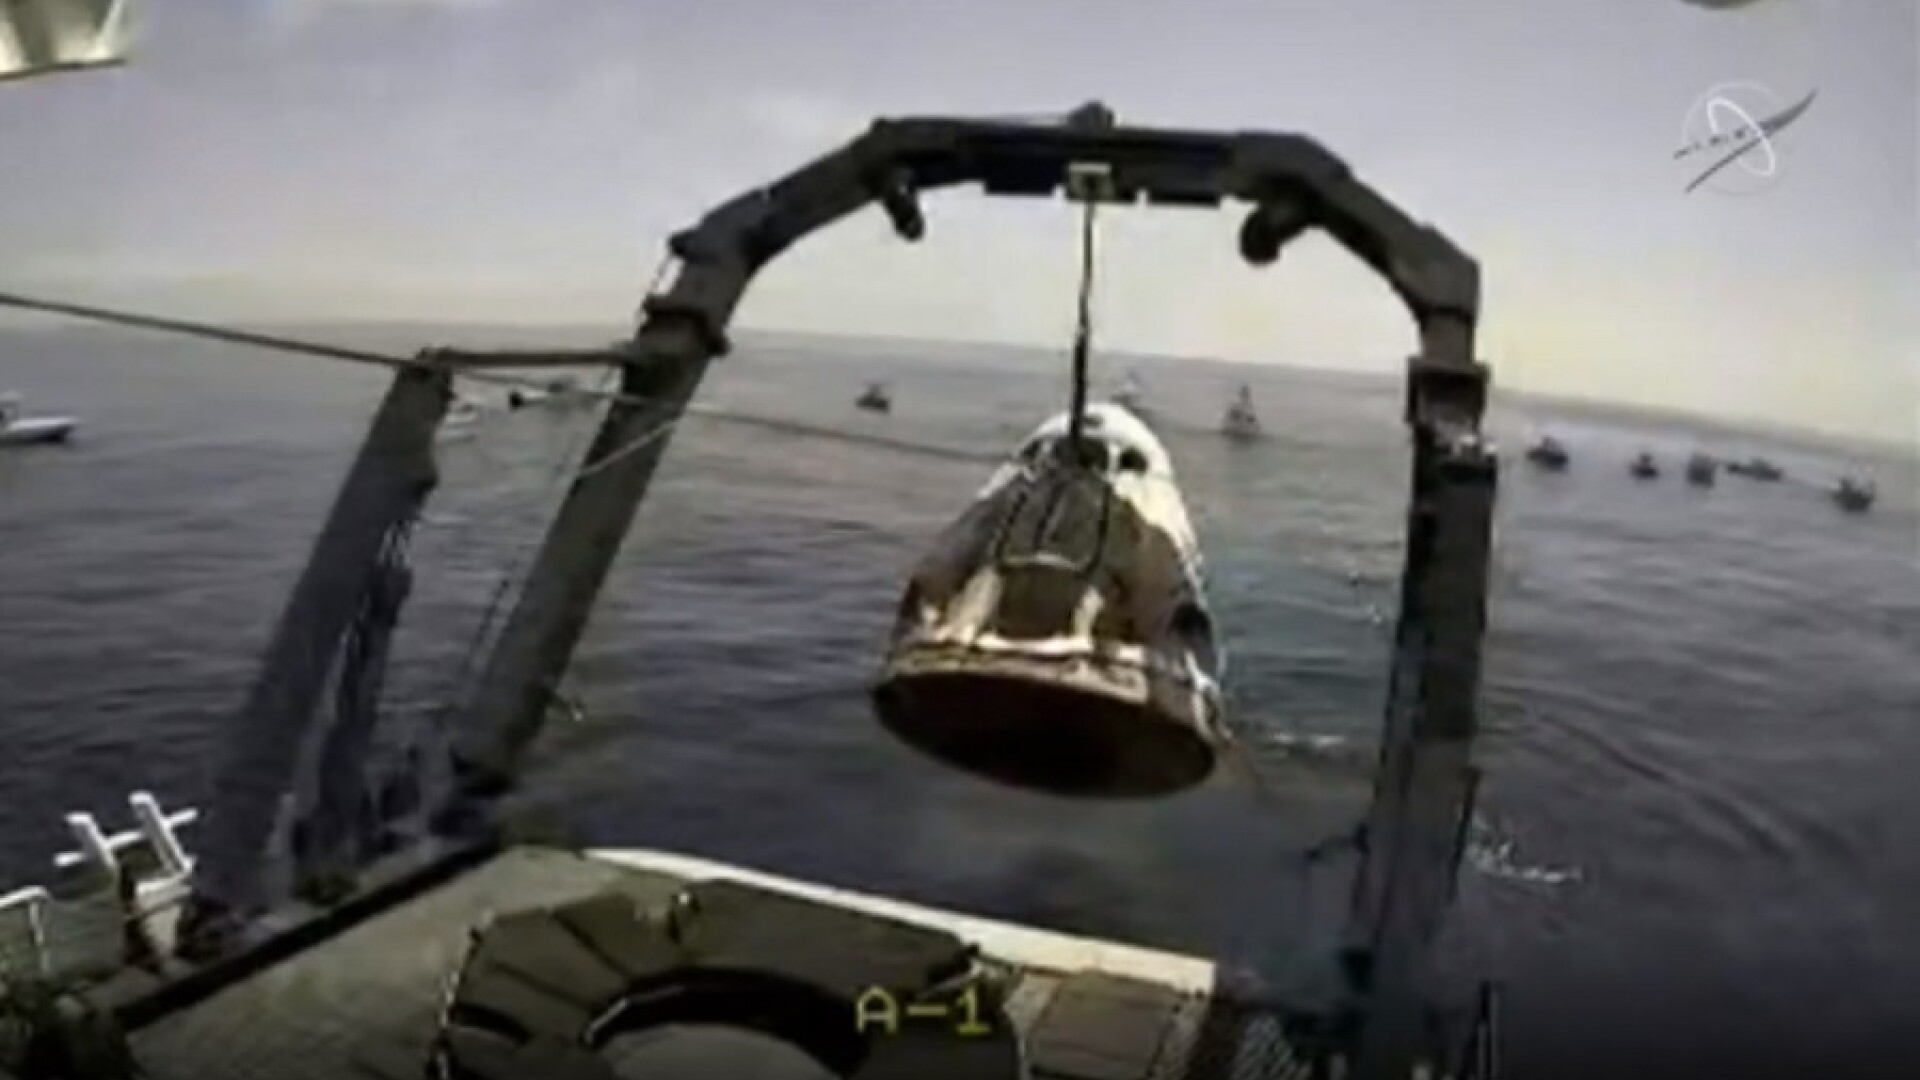 Capsula Crew Dragon a SpaceX a revenit pe Terra, după ce s-a detaşat de Staţia Spaţială Internaţională